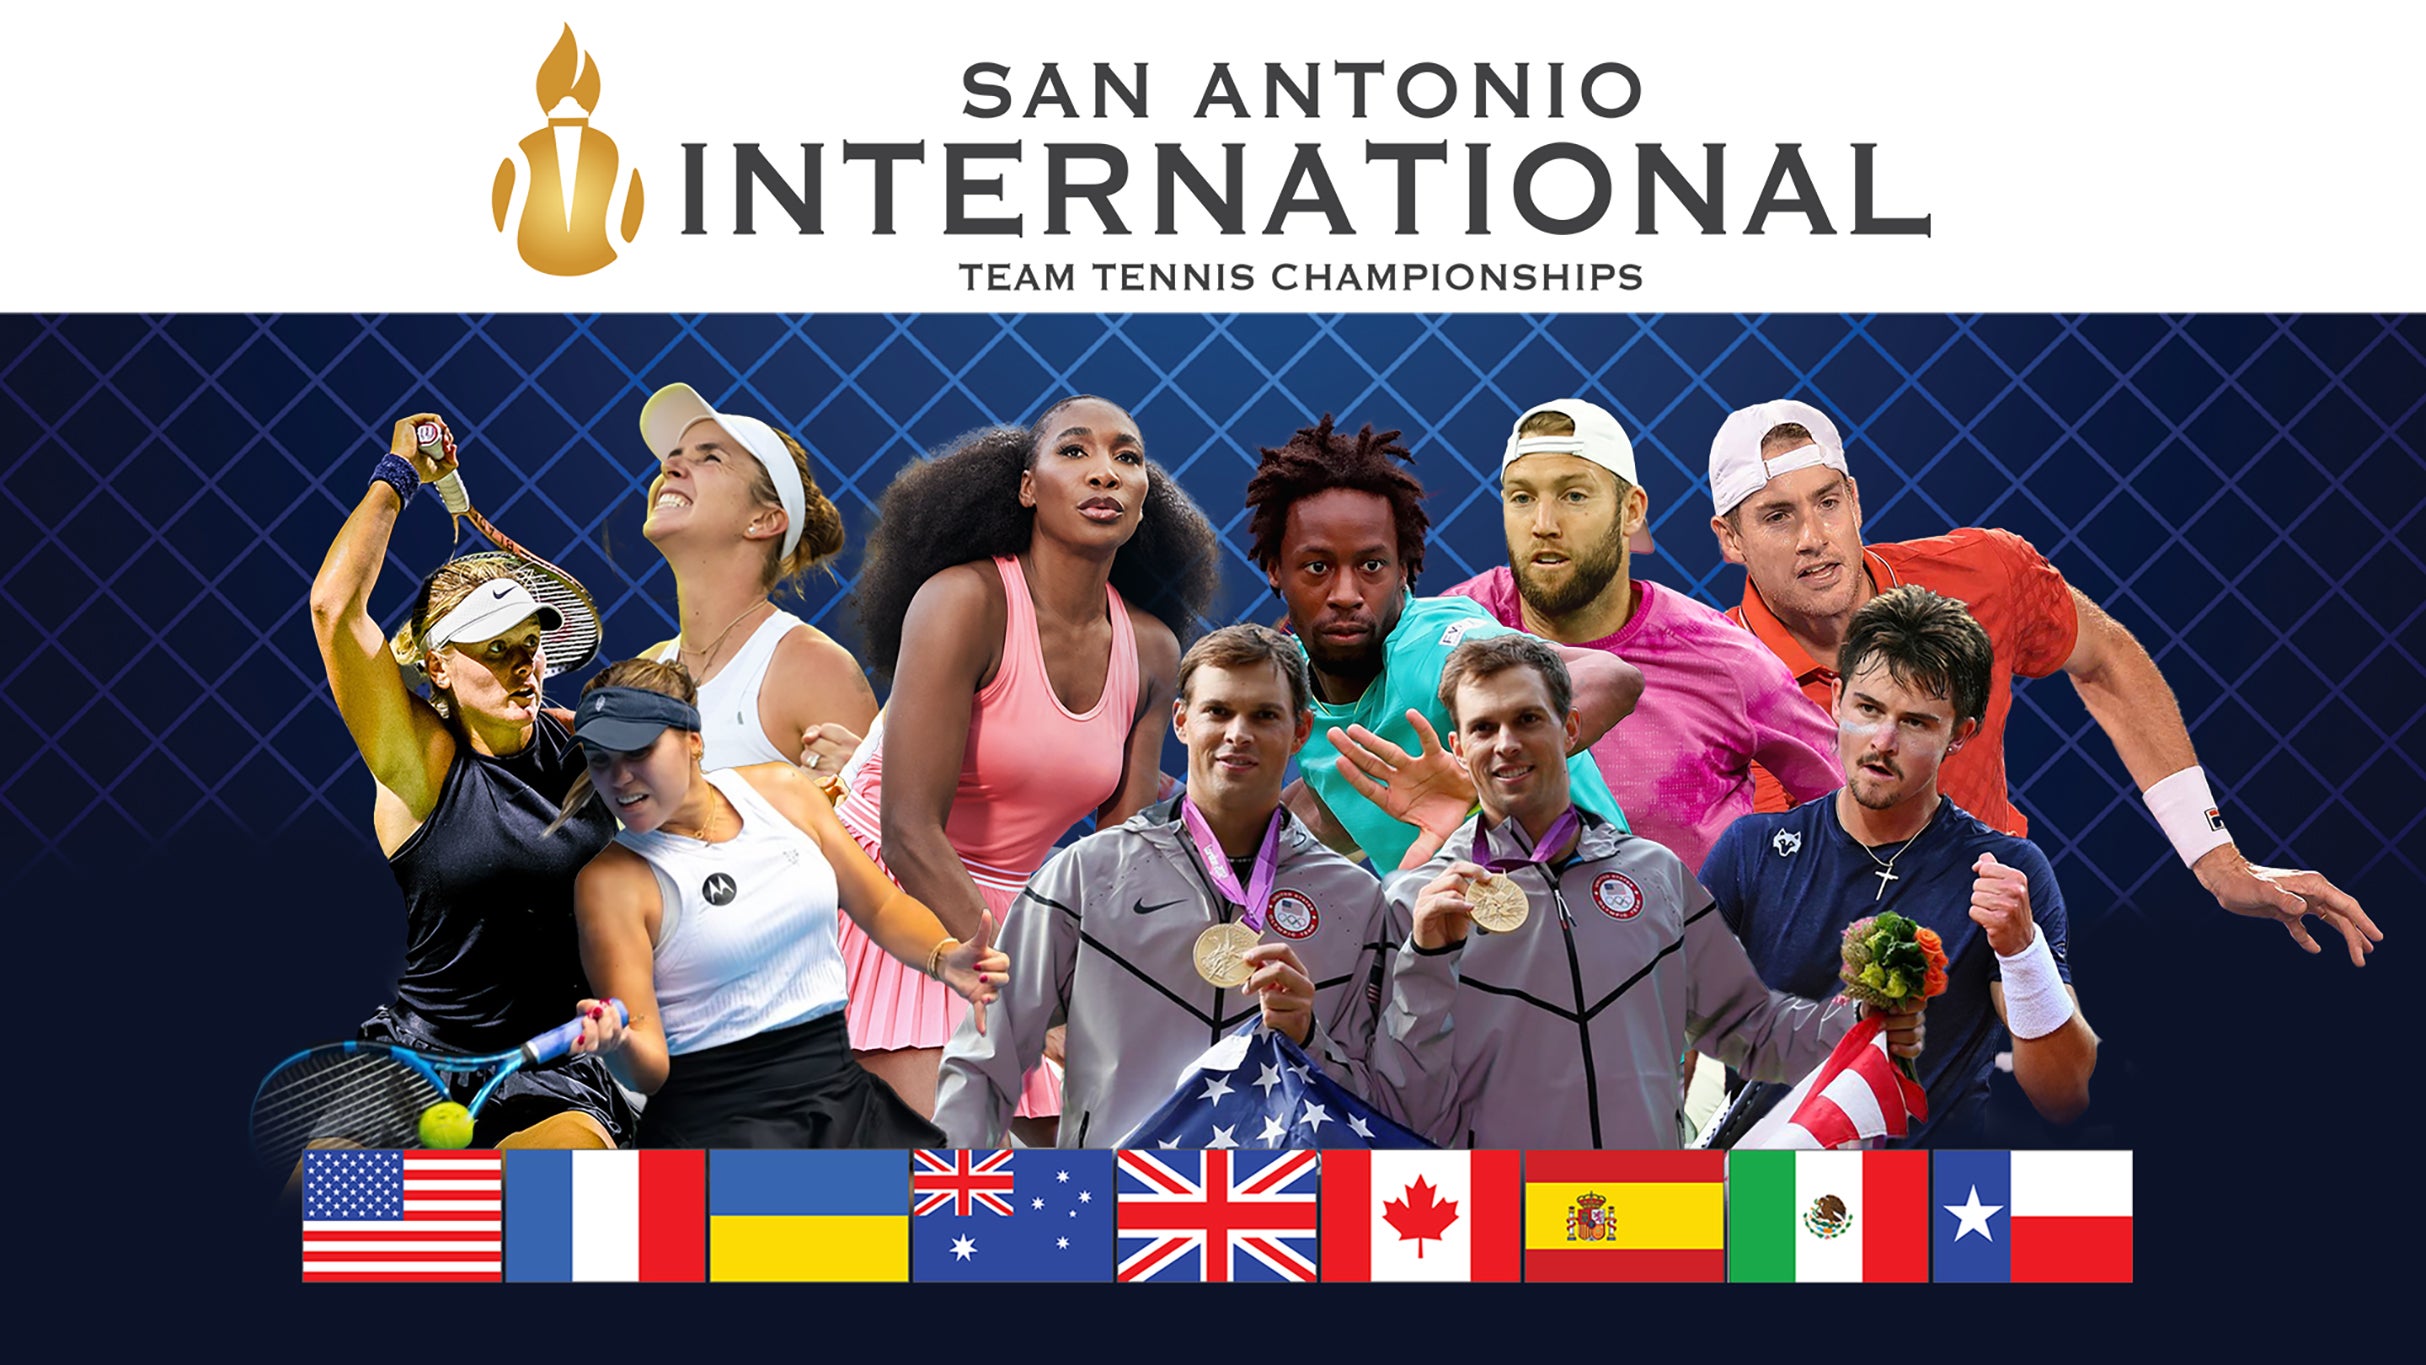 SAI Team Tennis Tournament in San Antonio promo photo for Venue presale offer code